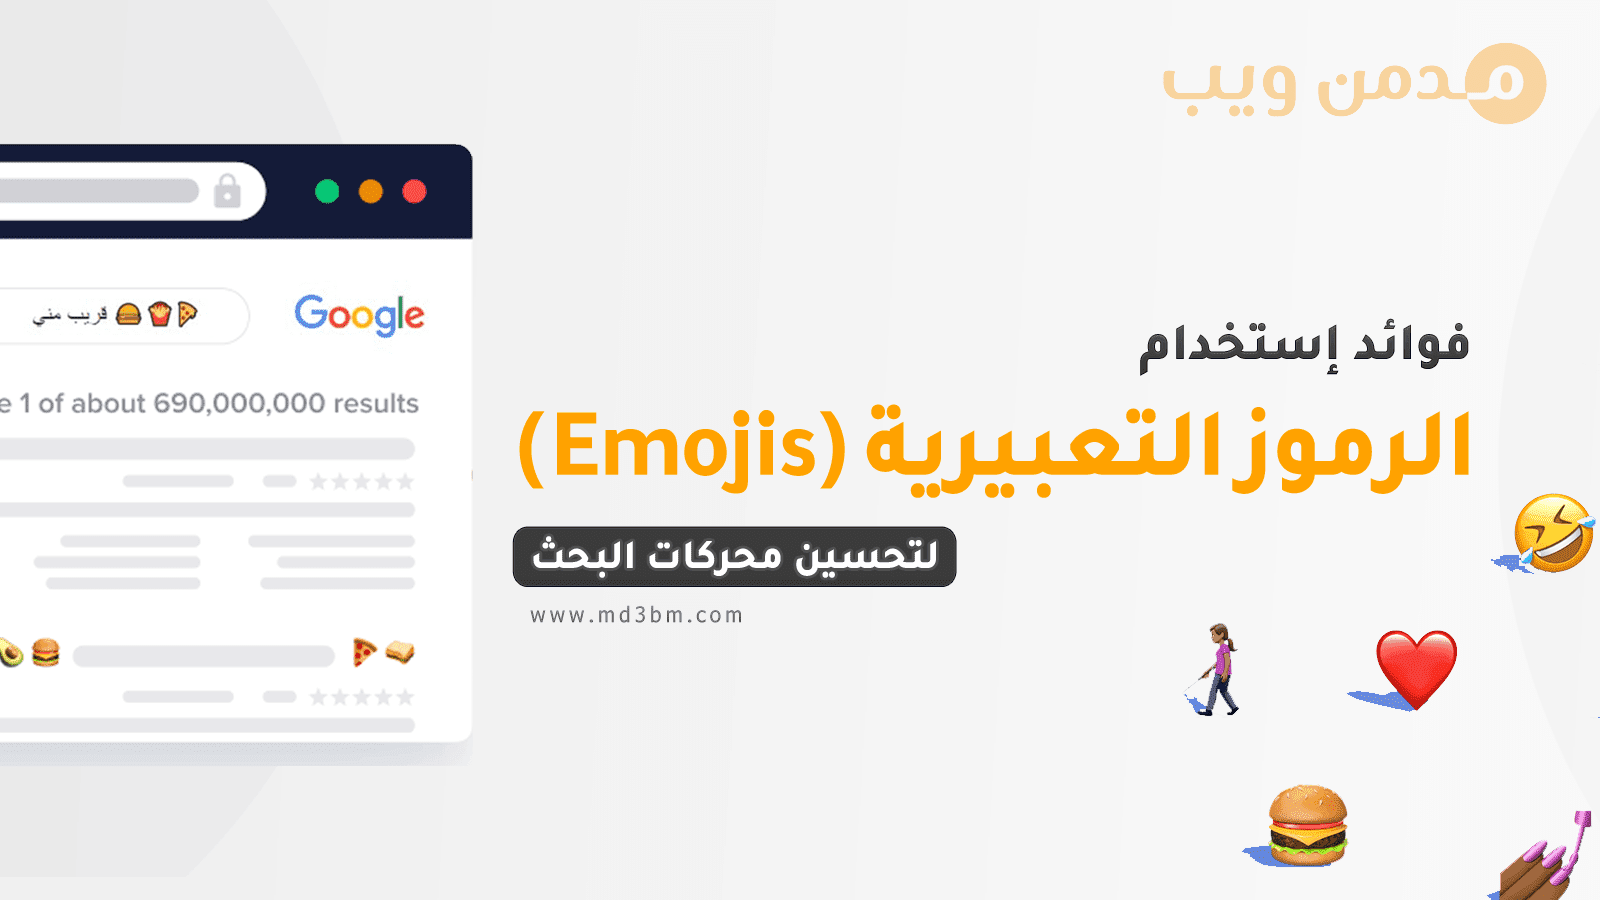 هل الرموز التعبيرية Emojis مفيدة في تحسين محركات البحث؟ 🤔 (مهم جدا) ✔